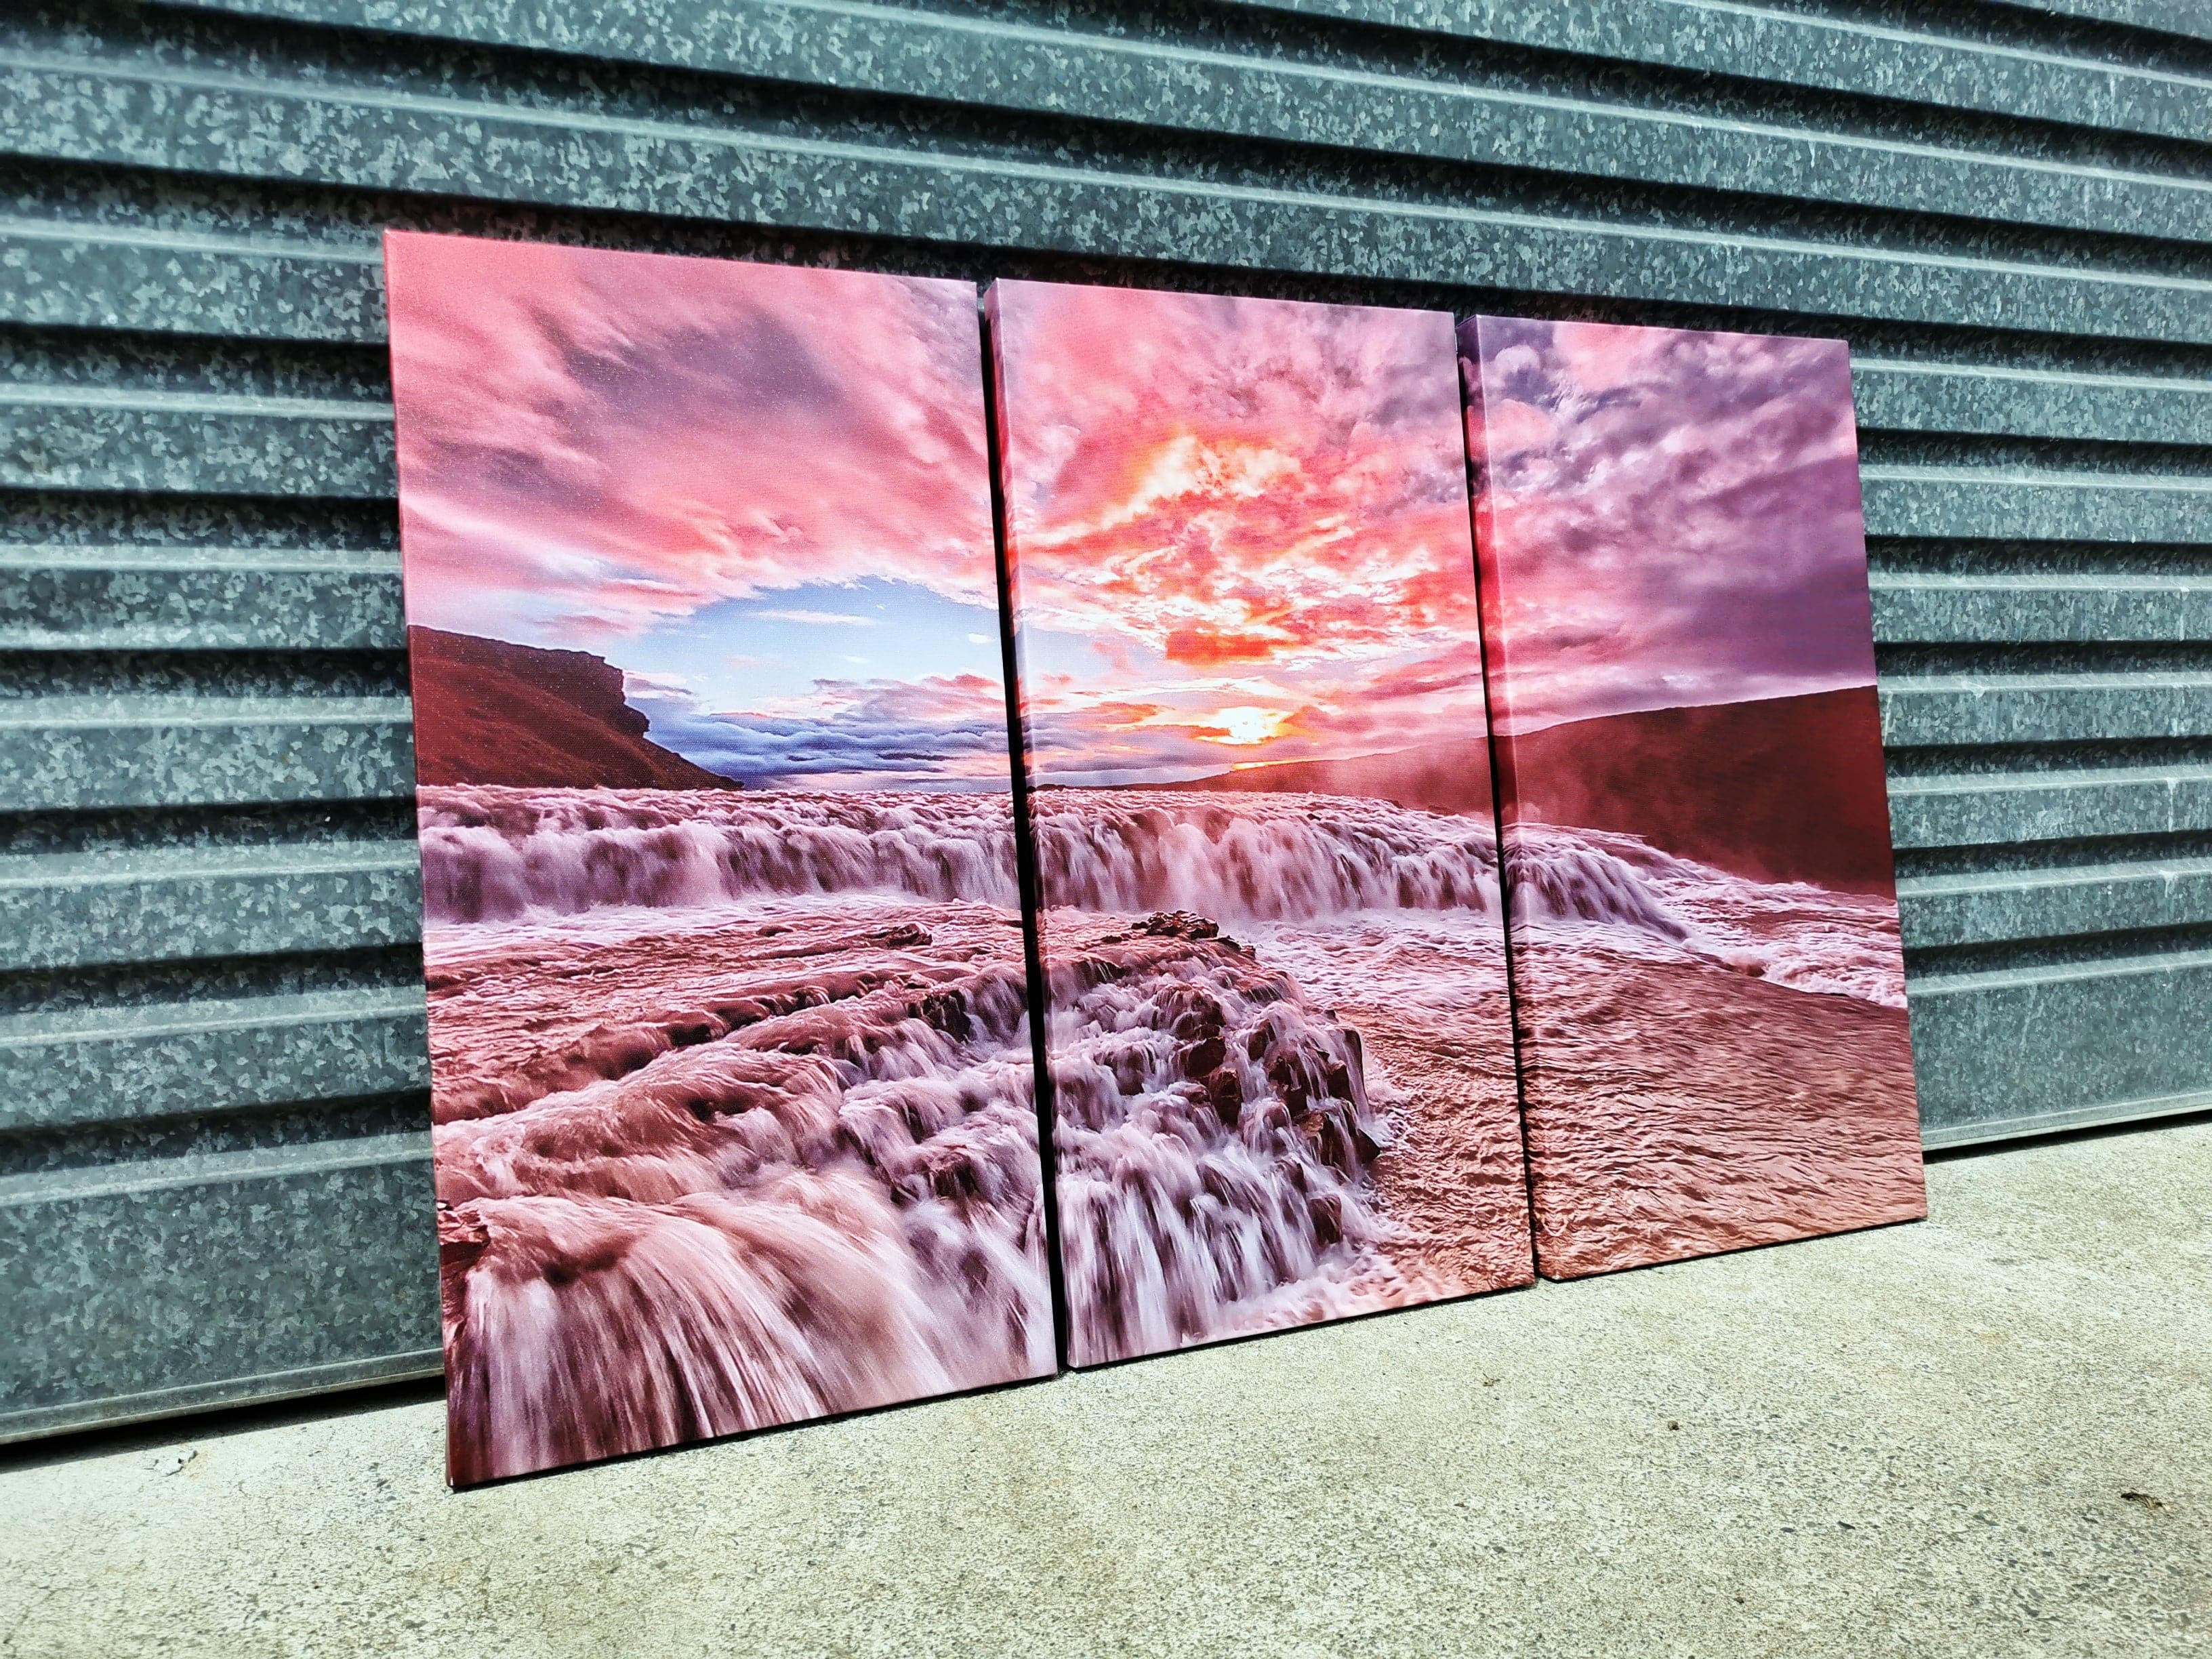 Framed 3 Panels - Sunset